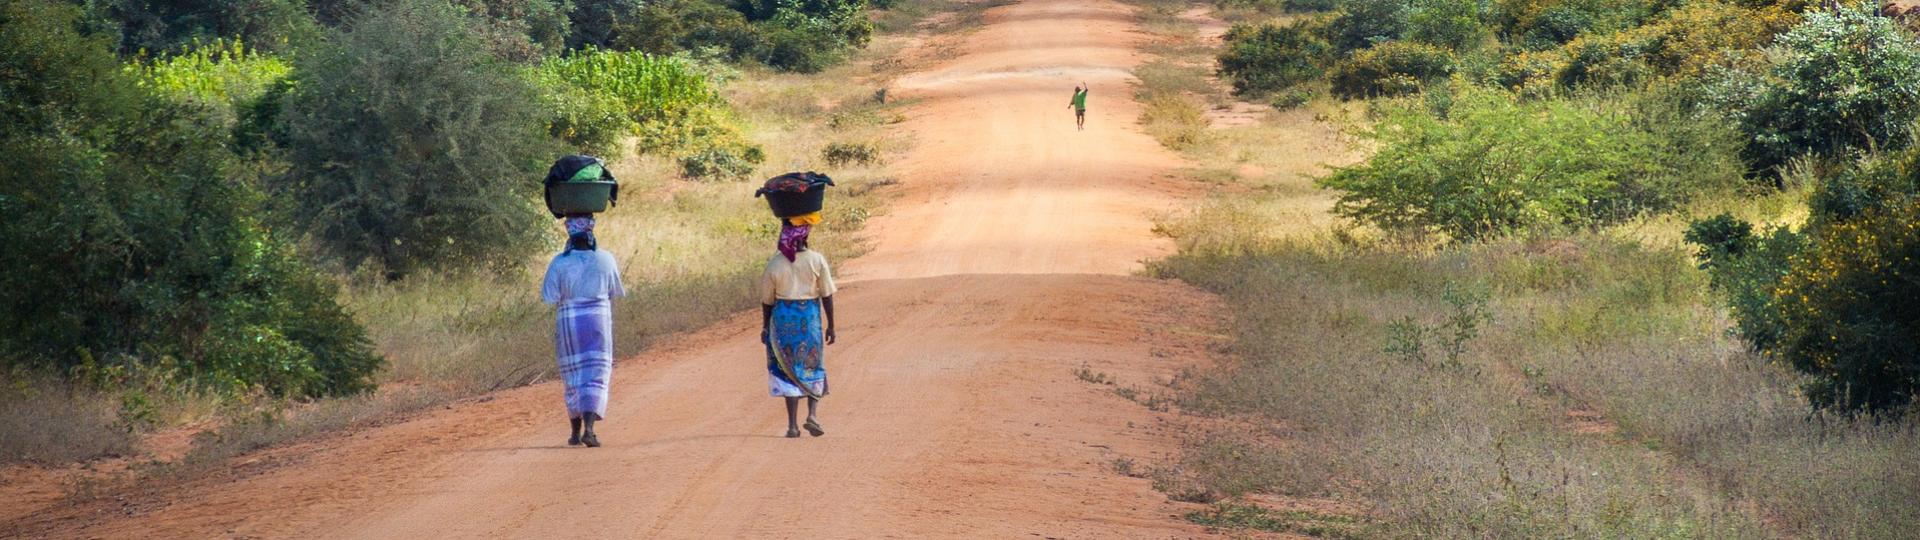 African women walking along a road